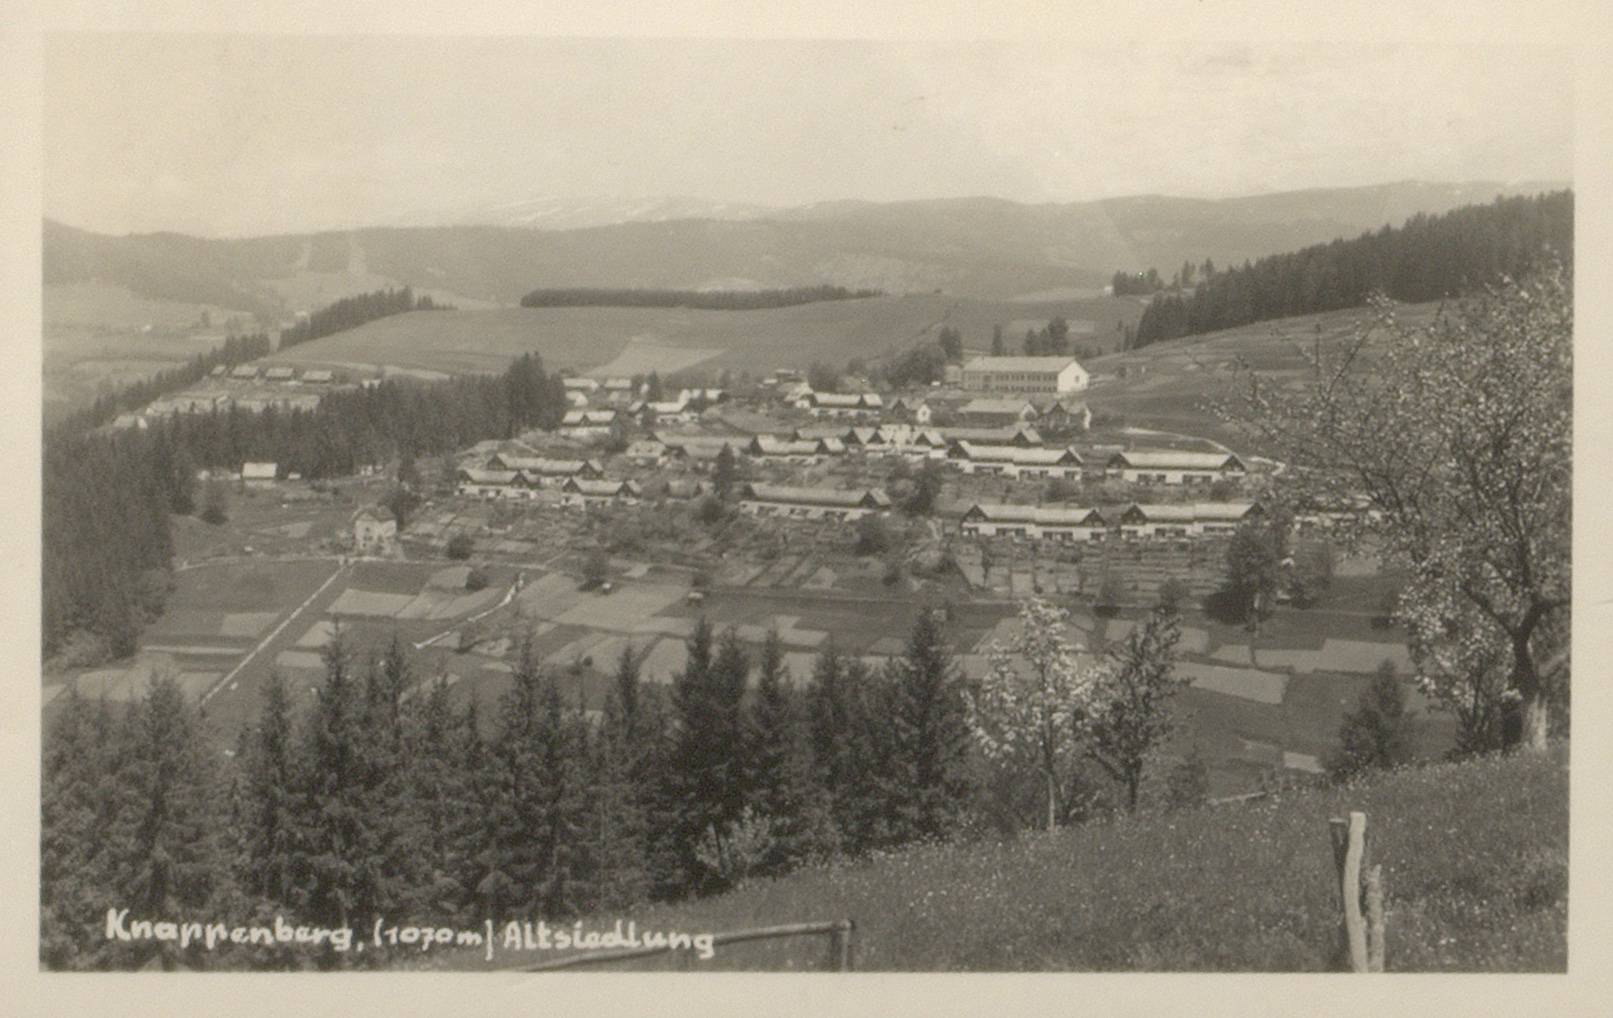 Die Siedlung in Knappenberg oberhalb von Hüttenberg stellt mit ihren 154 Reihenhäusern eine der bedeutendsten Siedlungen der Zwischenkriegszeit dar.